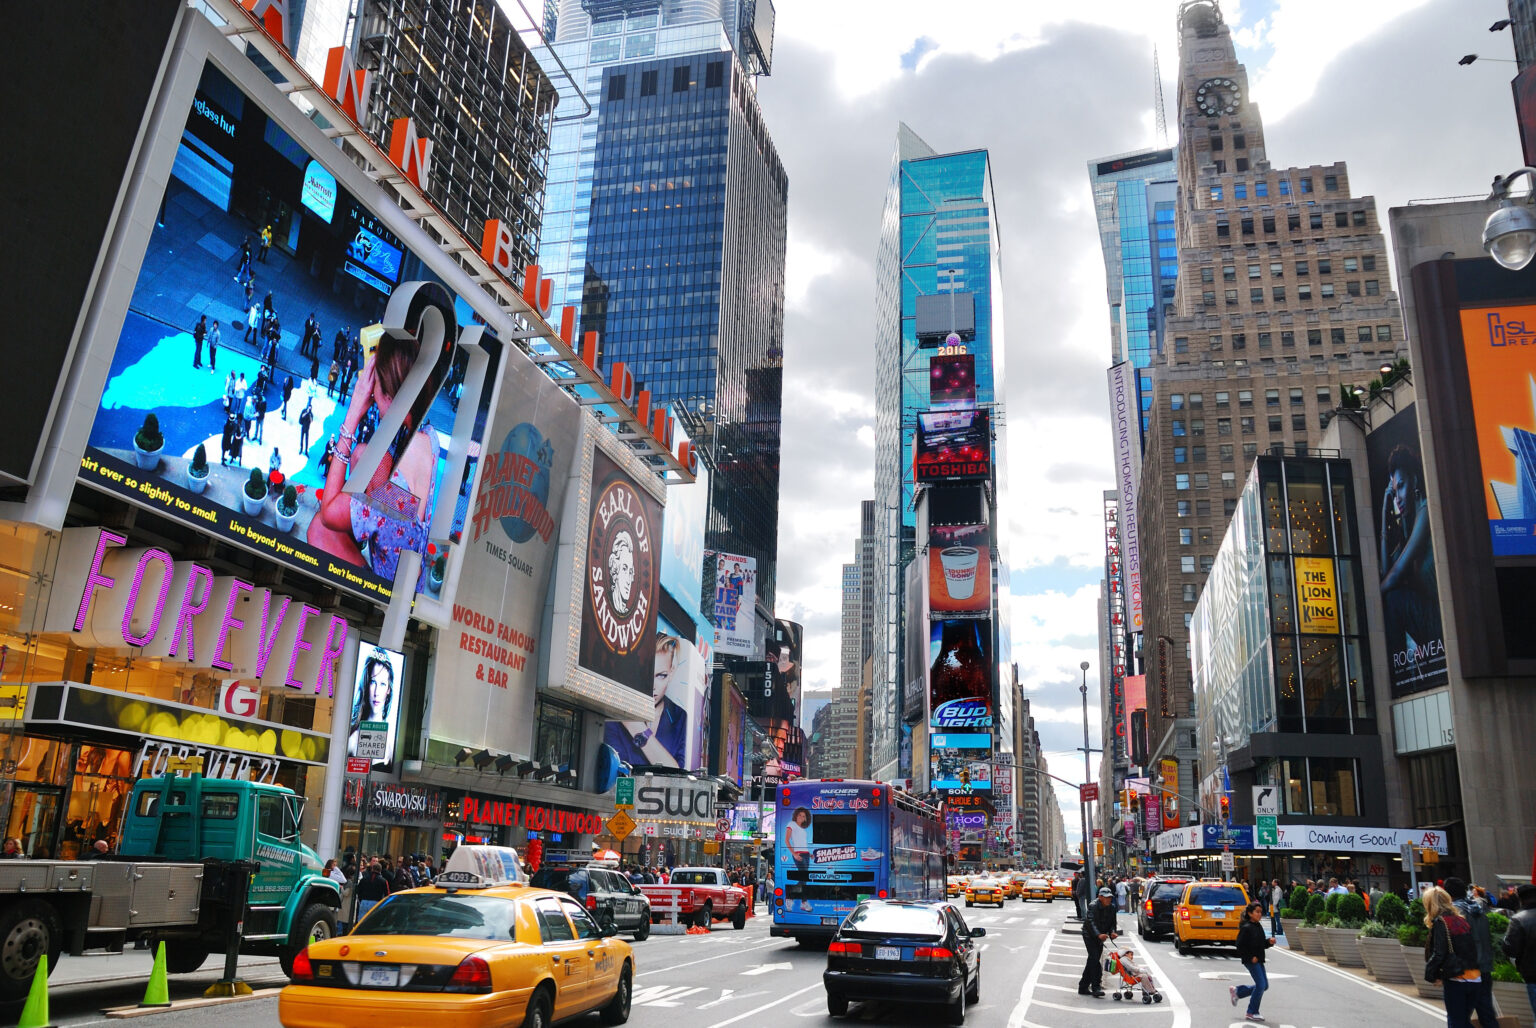 Var i New York City bör du bo? Rekommenderade områden och stadsdelar